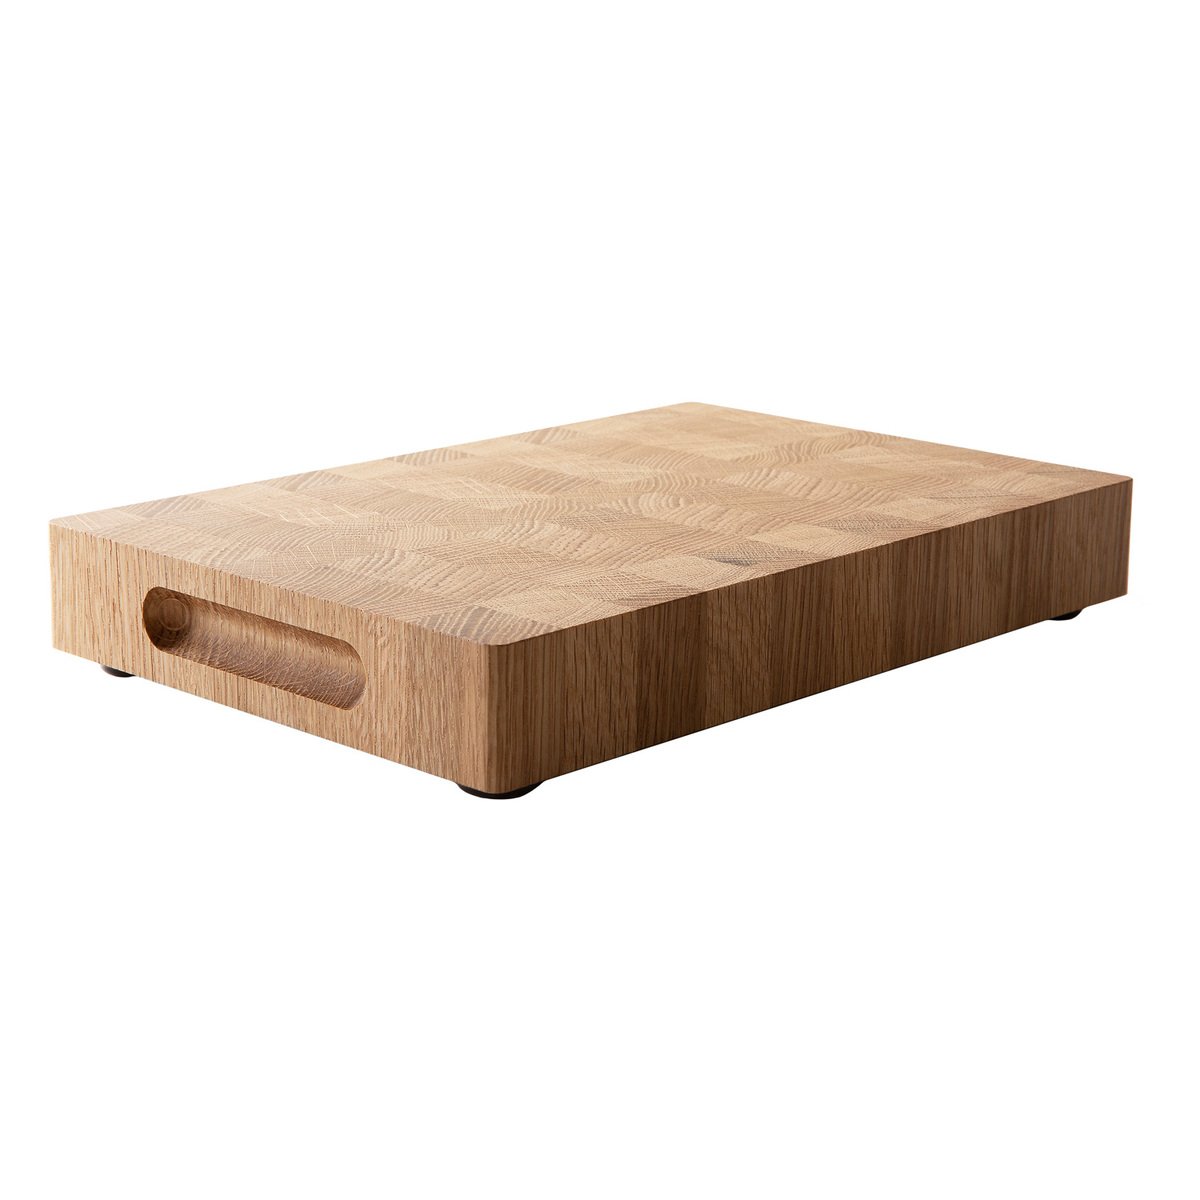 https://media.fds.fi/product_image/Wooden_cutting-board-oak-4.jpg